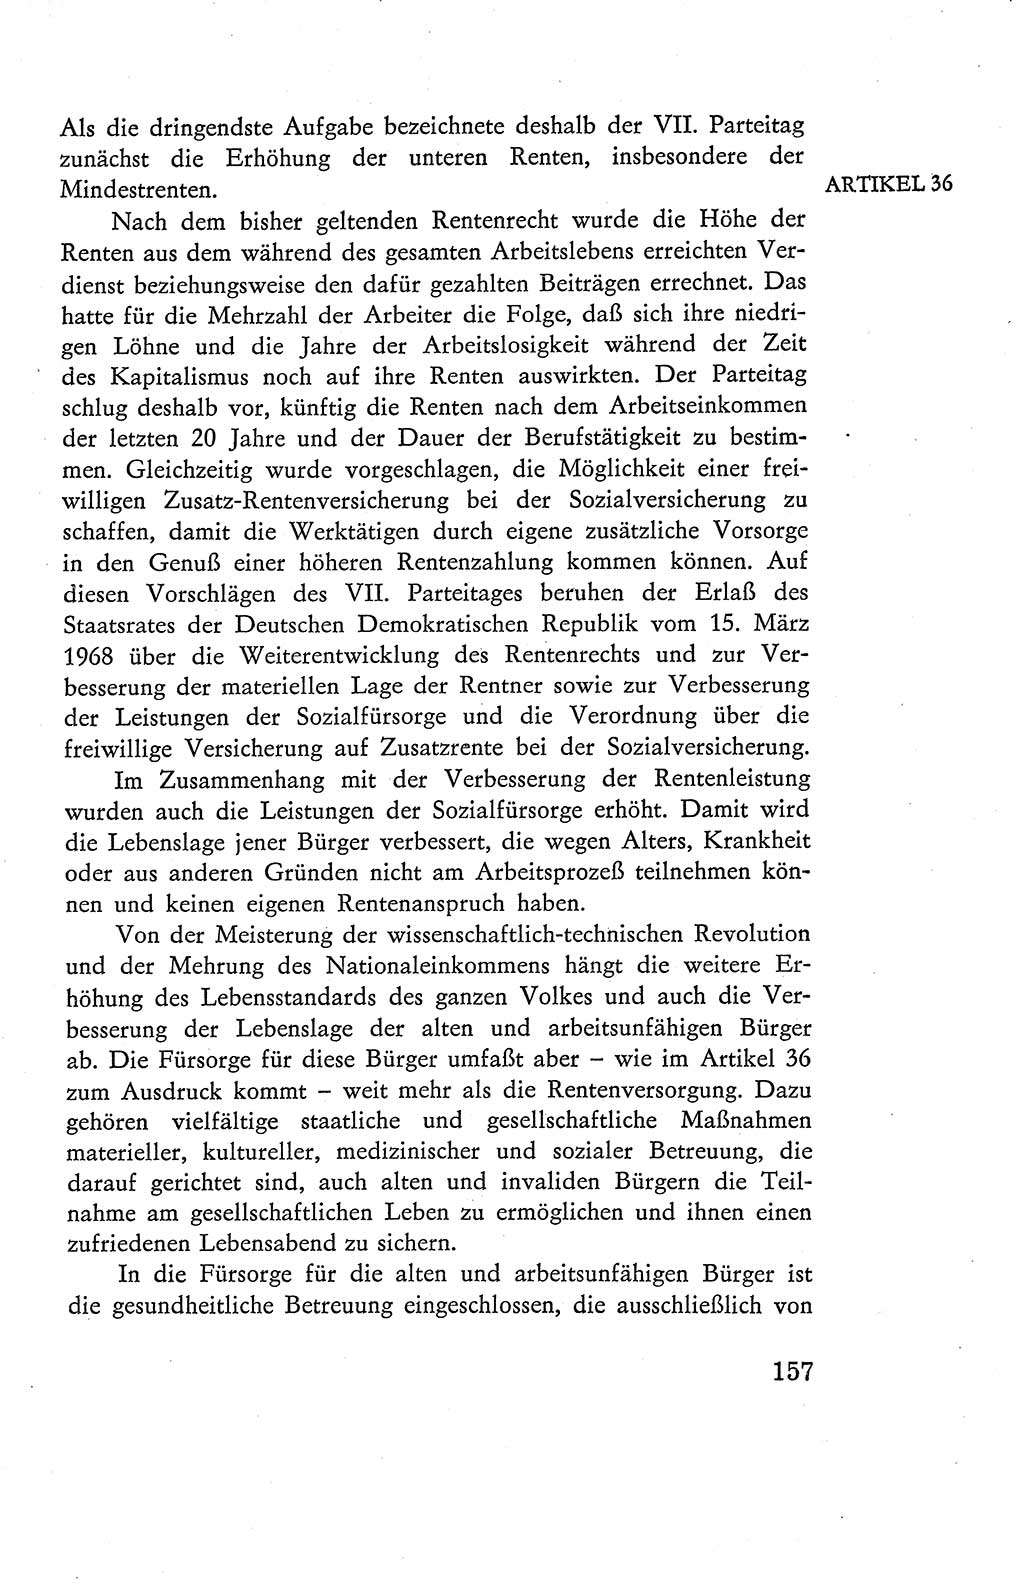 Verfassung der Deutschen Demokratischen Republik (DDR), Dokumente, Kommentar 1969, Band 2, Seite 157 (Verf. DDR Dok. Komm. 1969, Bd. 2, S. 157)